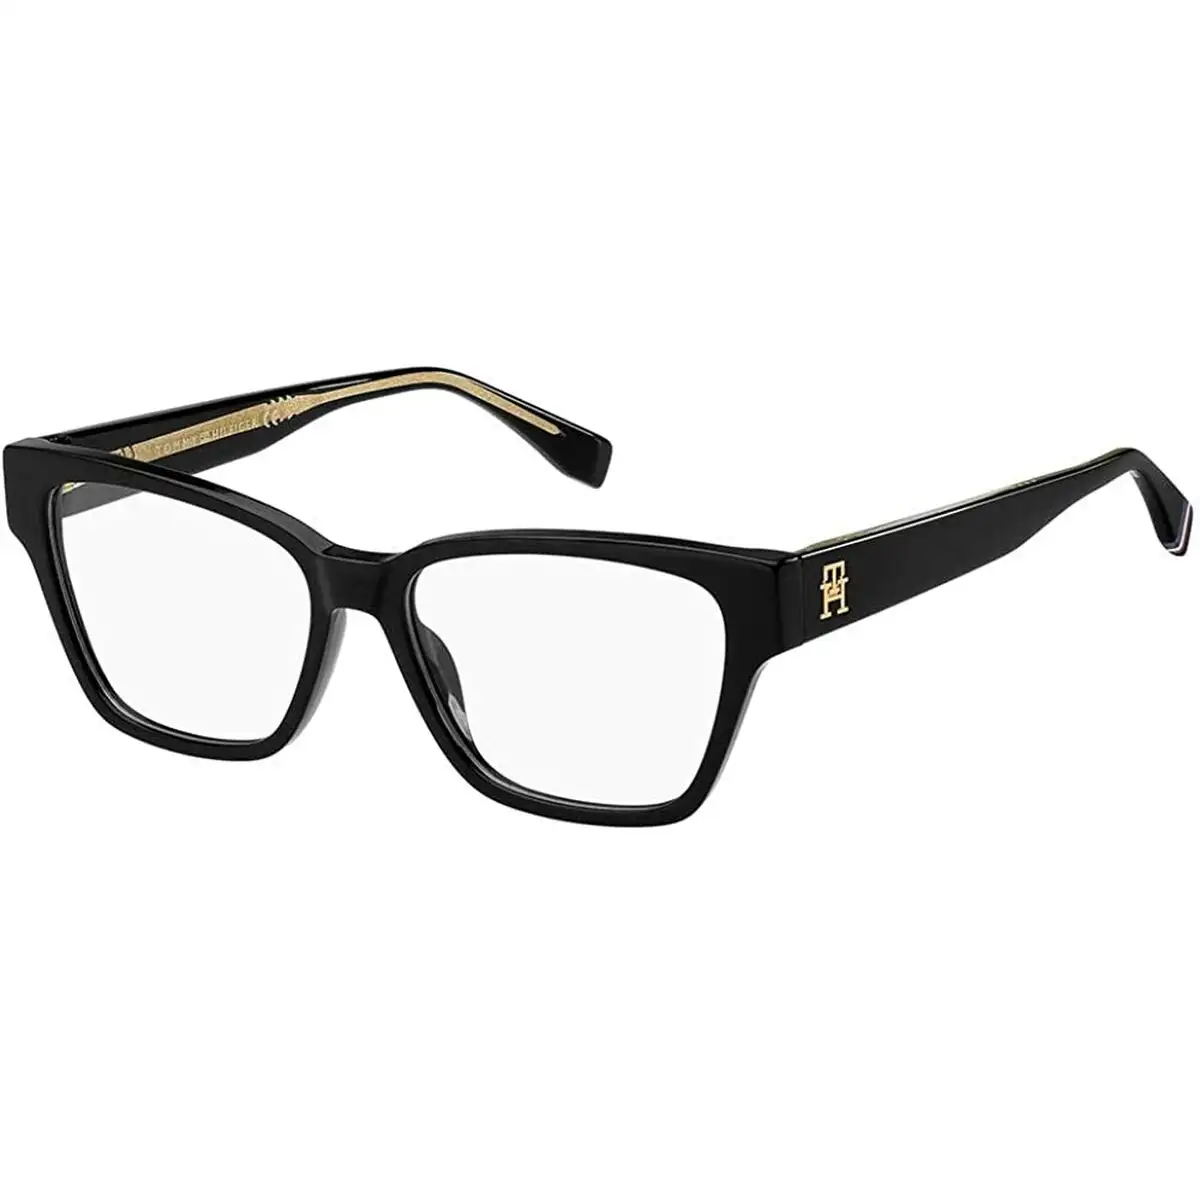 Monture de lunettes femme tommy hilfiger th 2000_5453. DIAYTAR SENEGAL - Où Chaque Produit est une Promesse de Qualité. Explorez notre boutique en ligne et choisissez des produits qui répondent à vos exigences élevées.